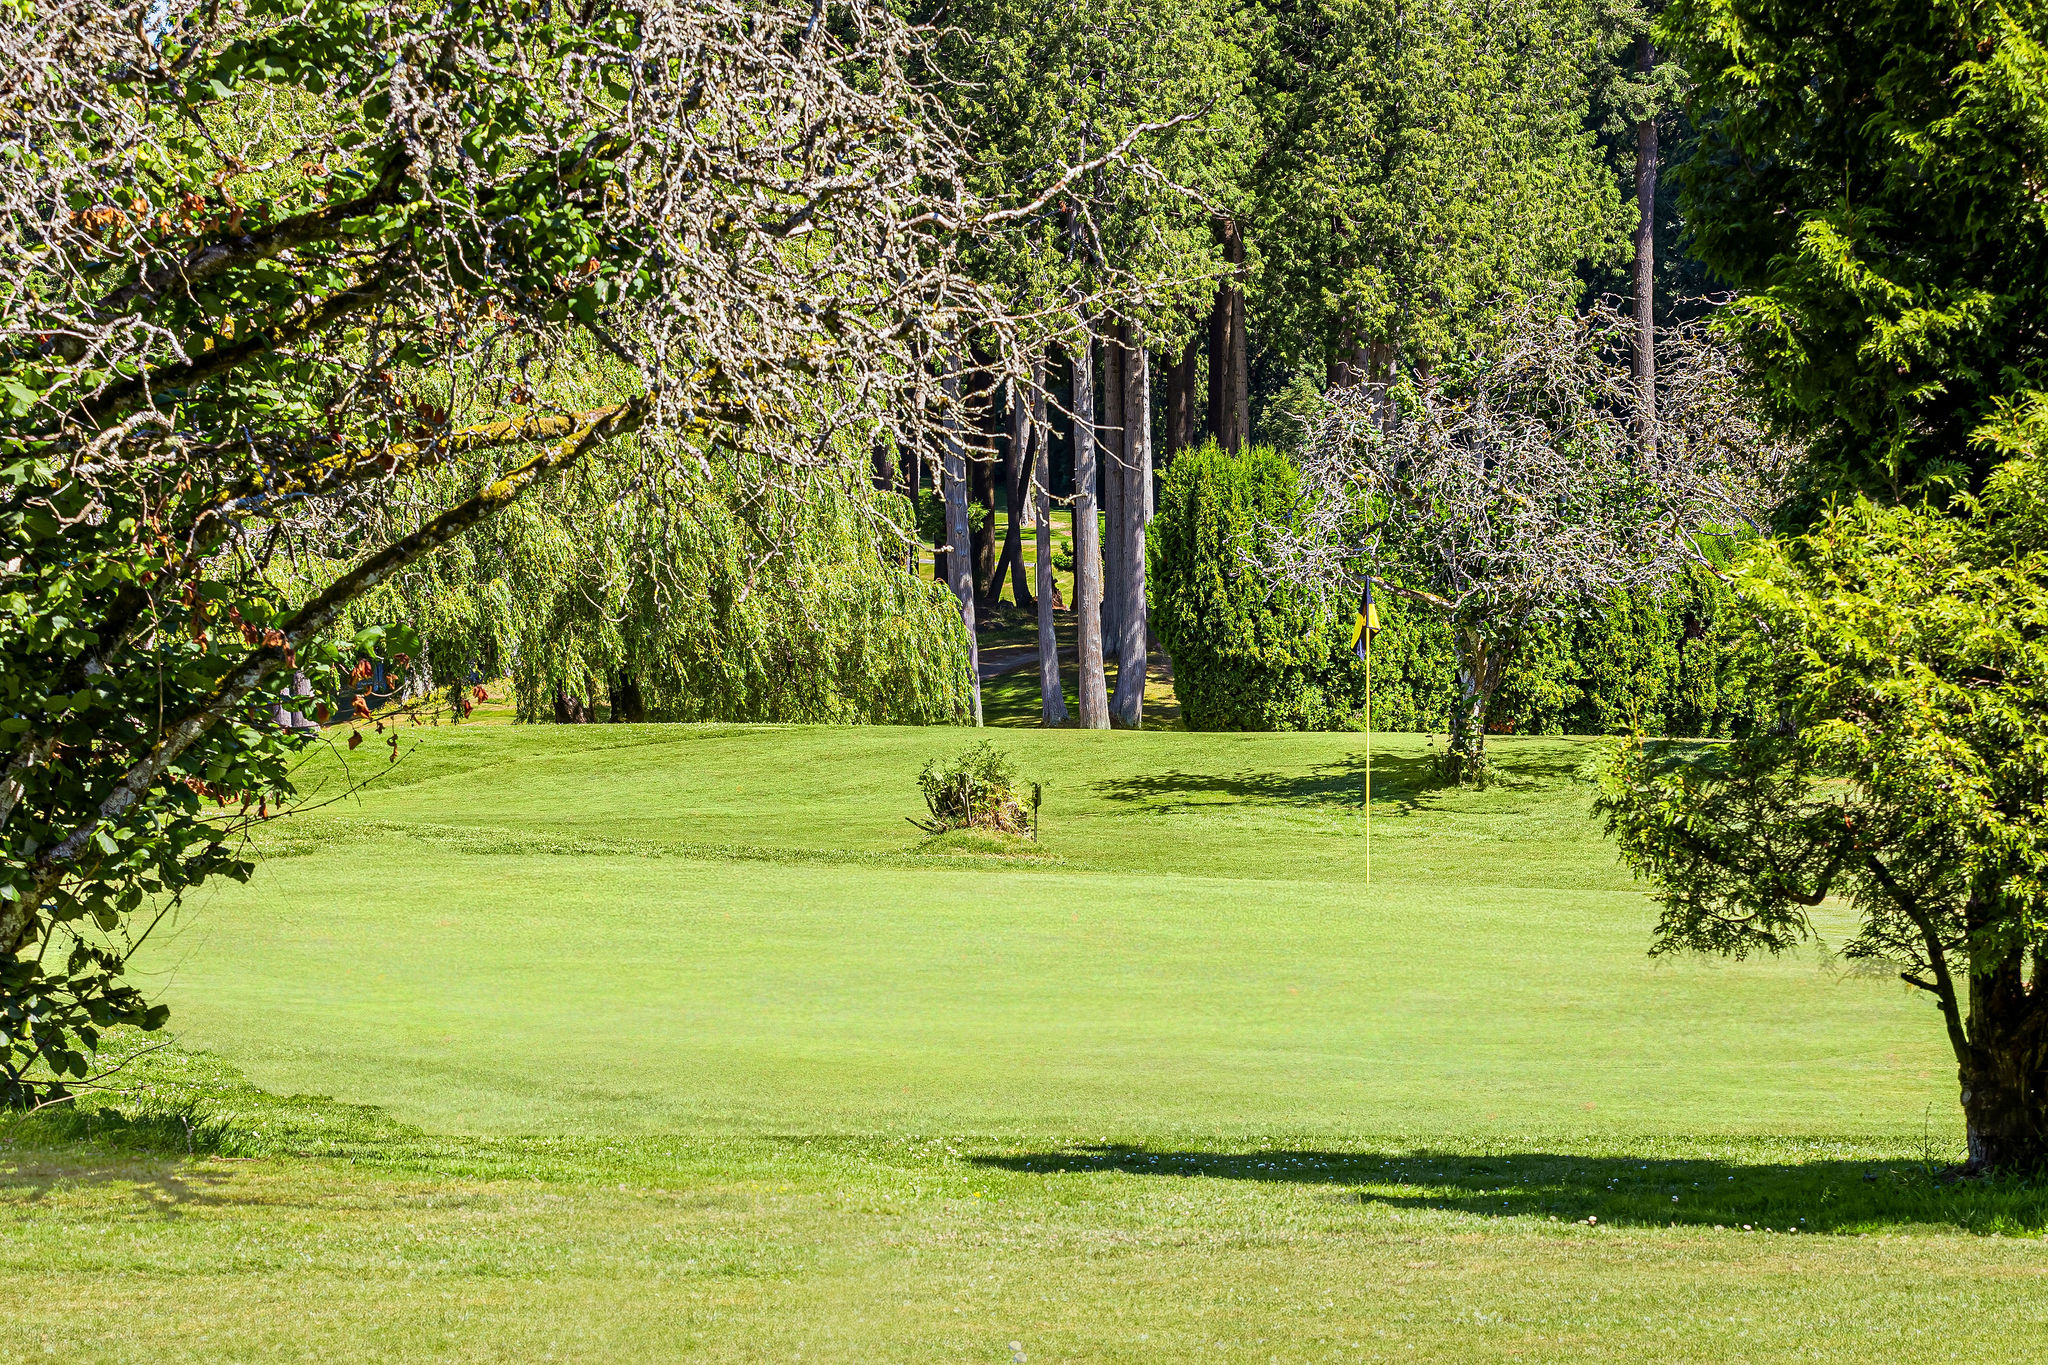 Par 3 golf course - Meridian Hills - Surrey BC